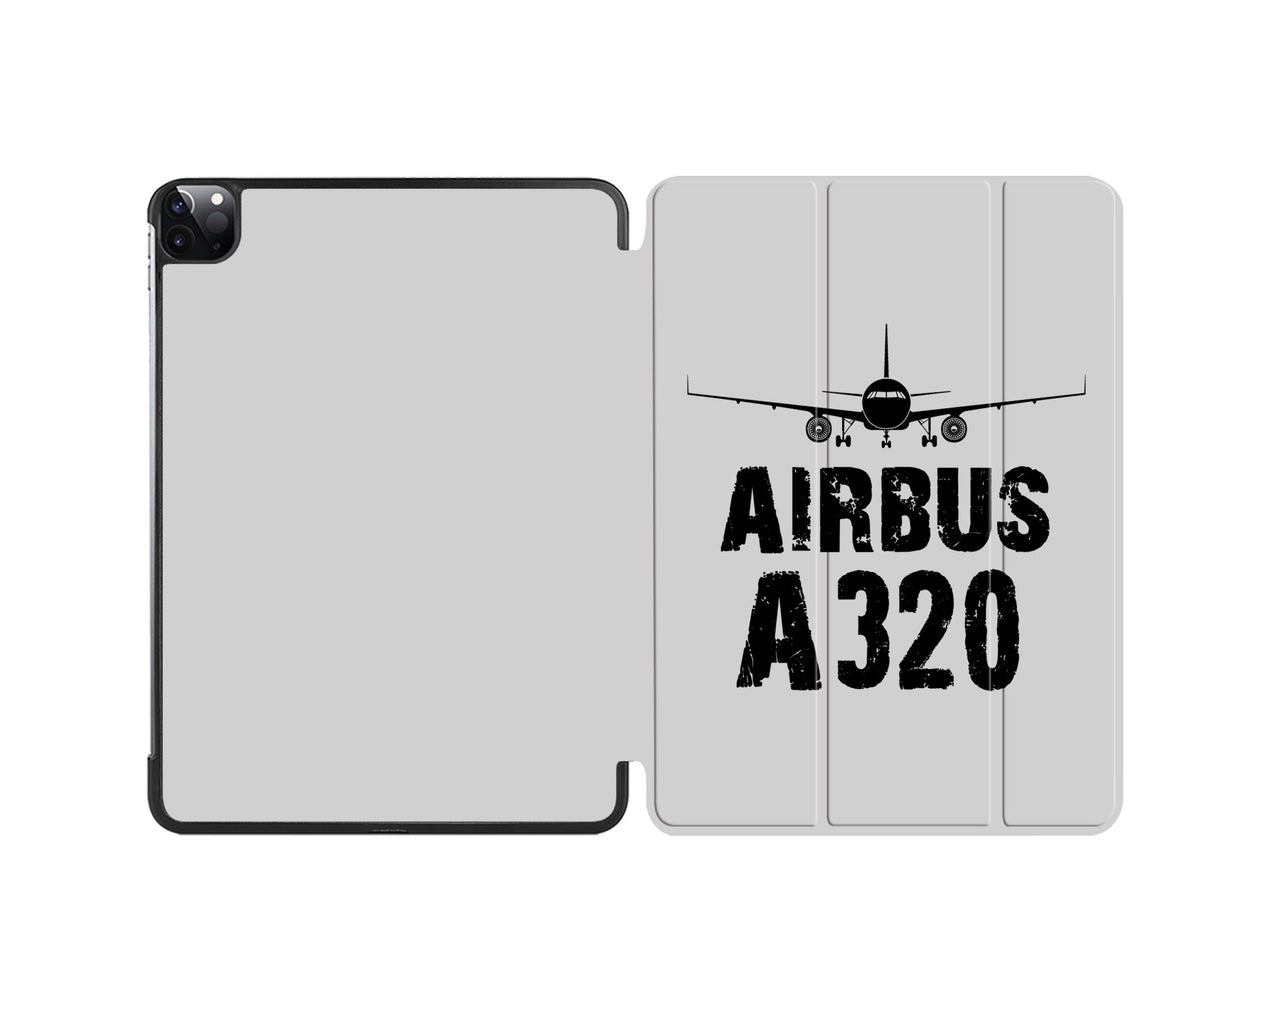 Airbus A320 & Plane Designed iPad Cases